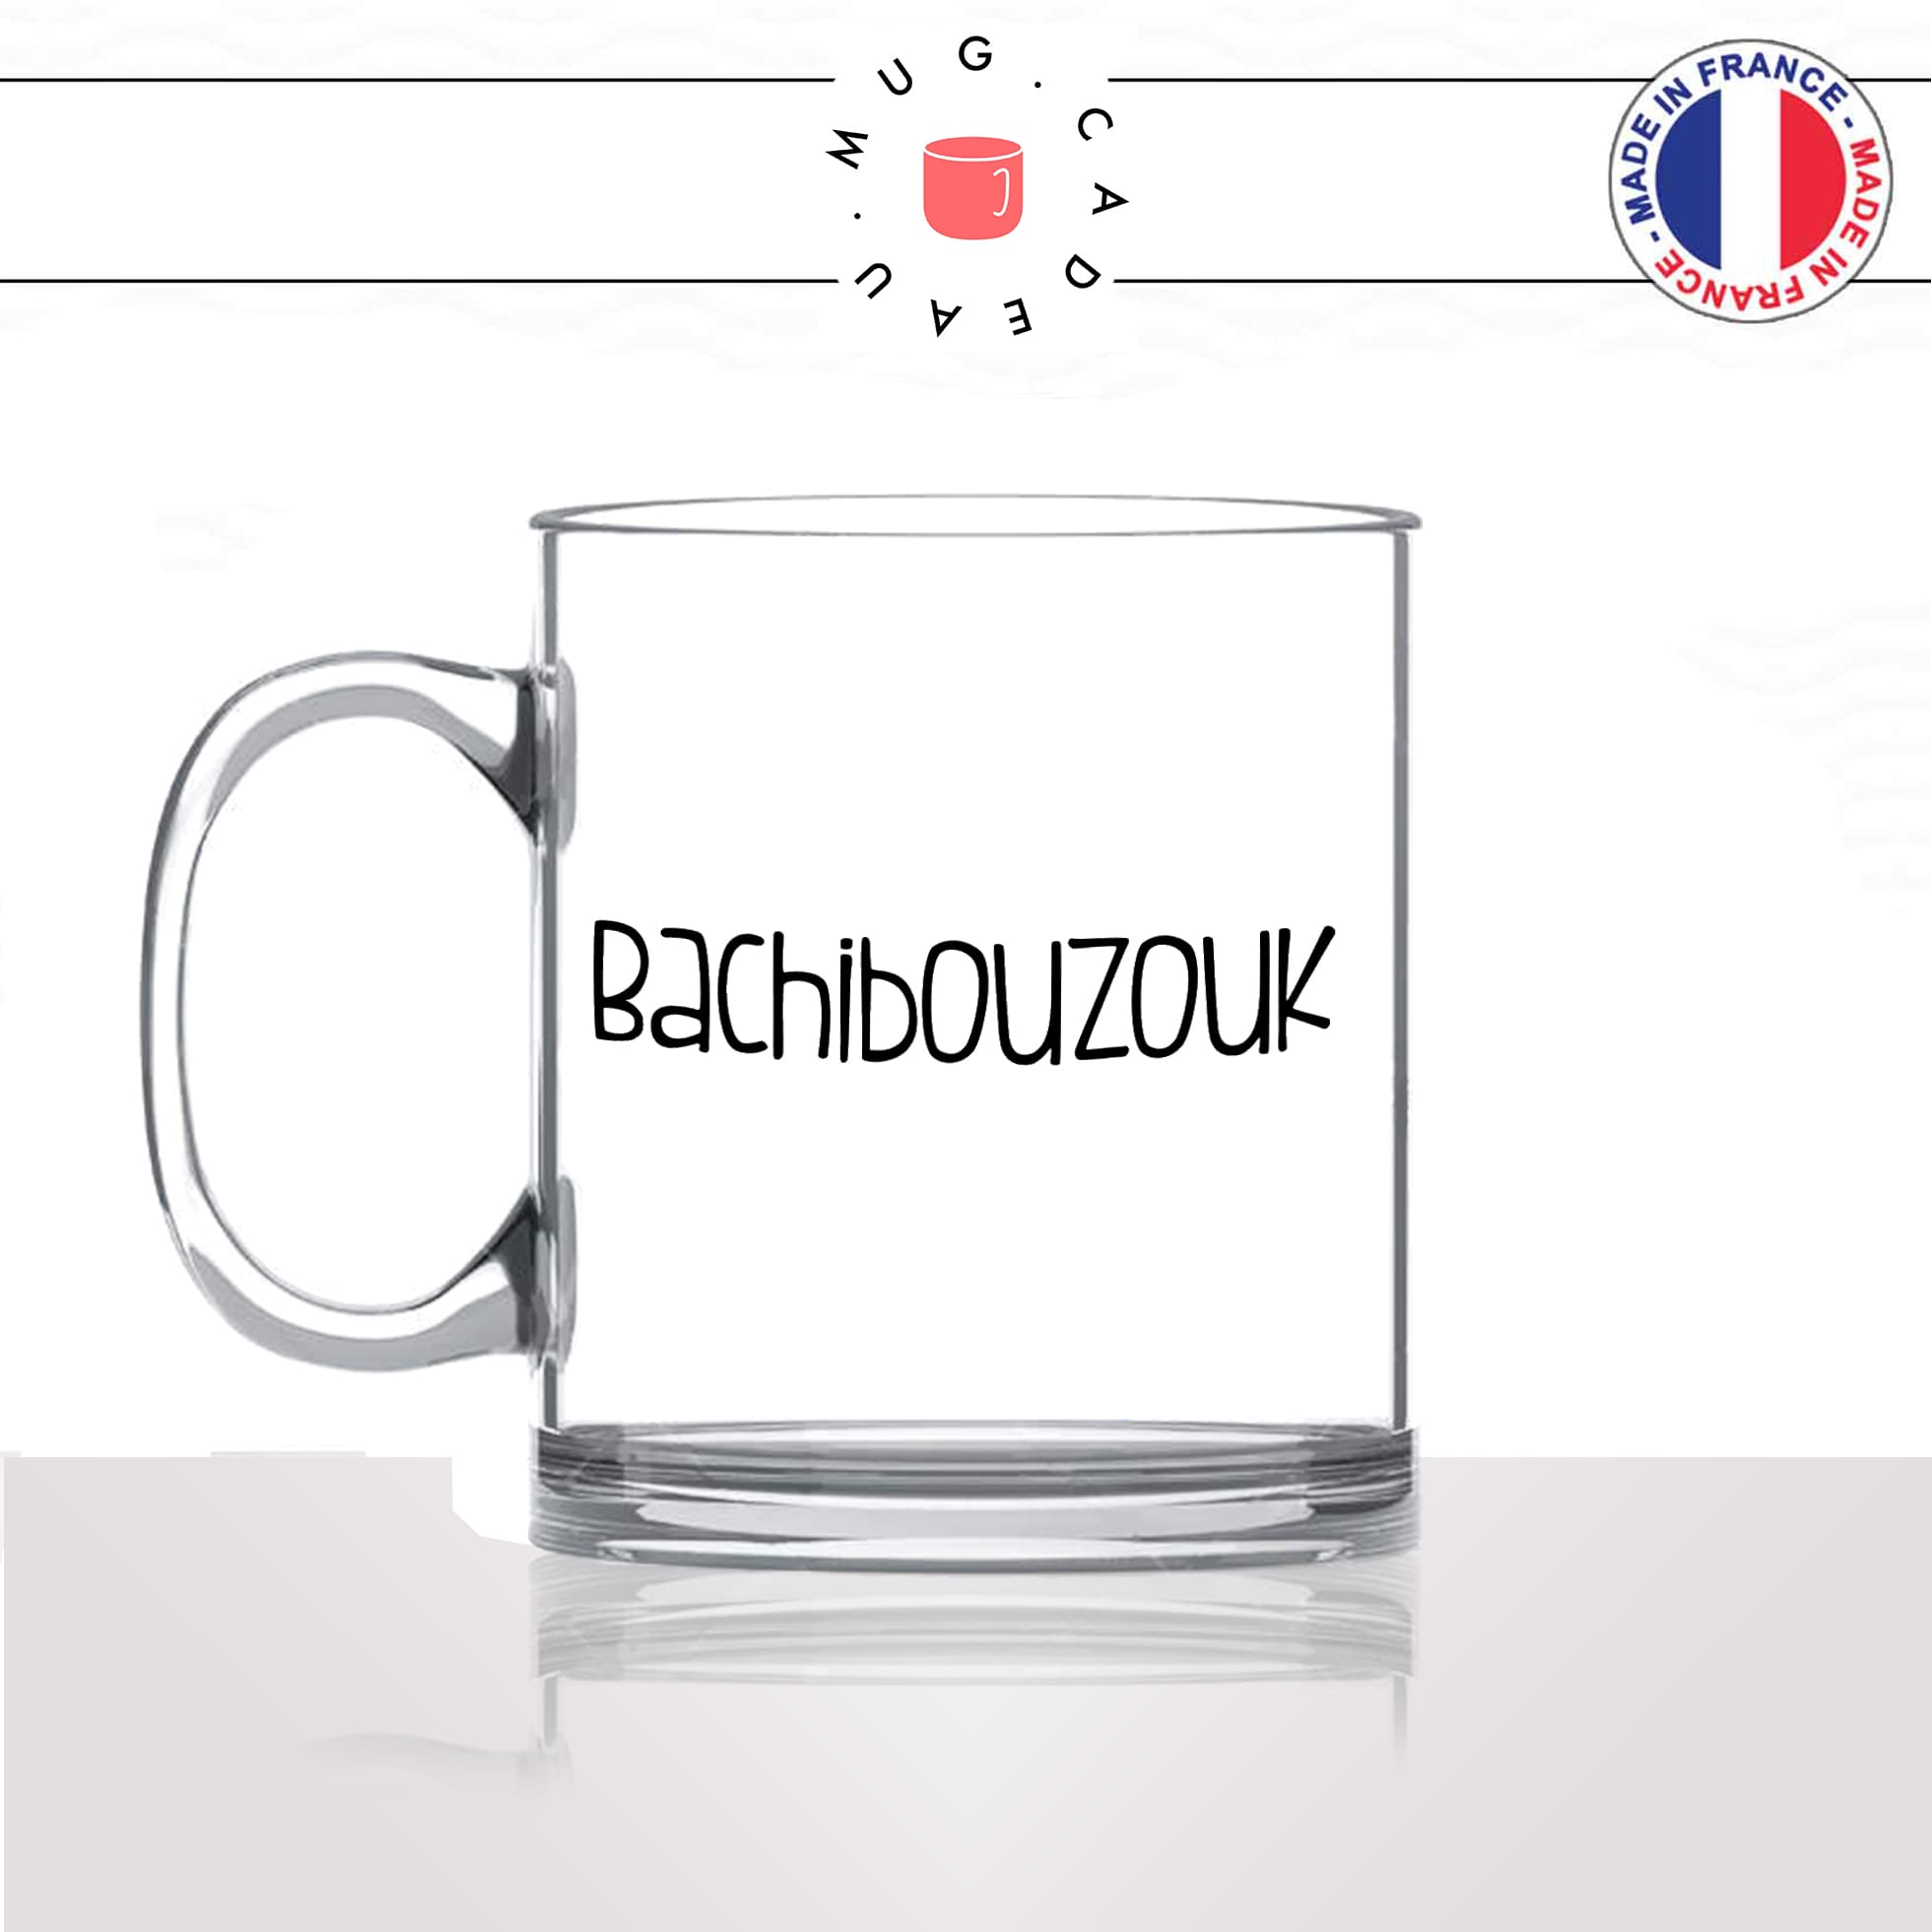 mug-tasse-en-verre-transparent-glass-unique-bachibouzouk-tintin-capitaine-hadock-homme-femme-humour-fun-cool-idée-cadeau-original